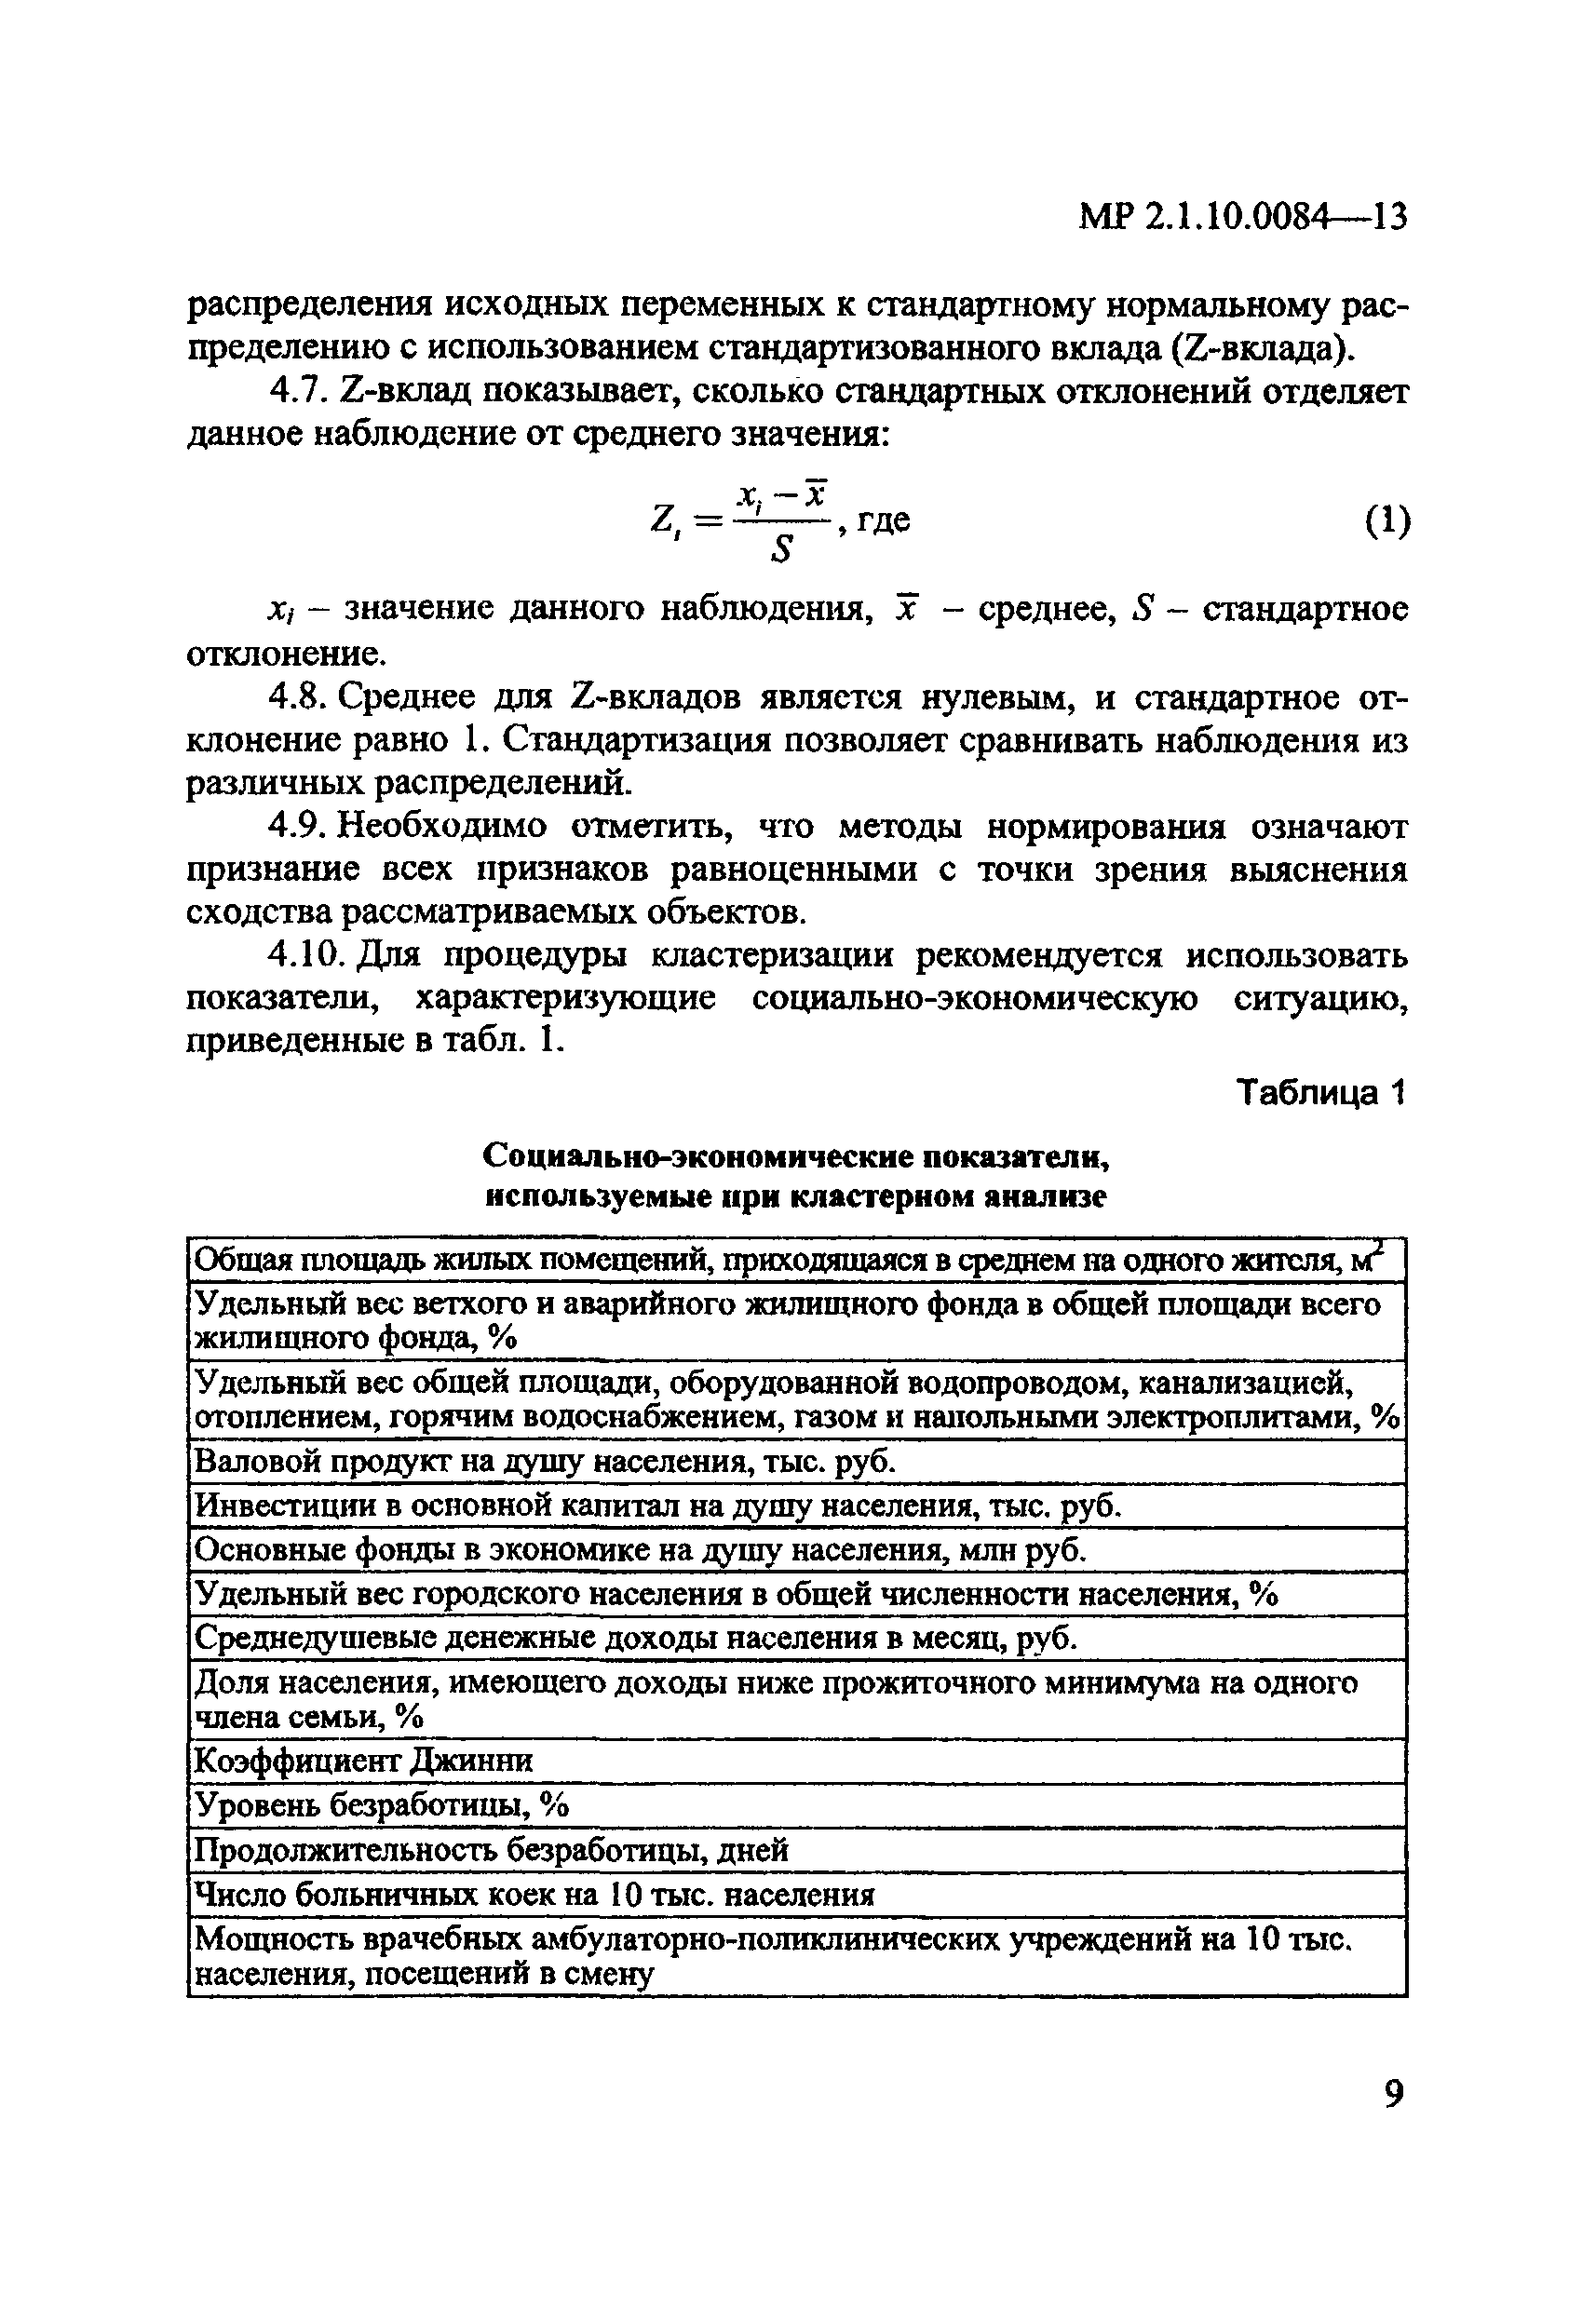 МР 2.1.10.0084-13